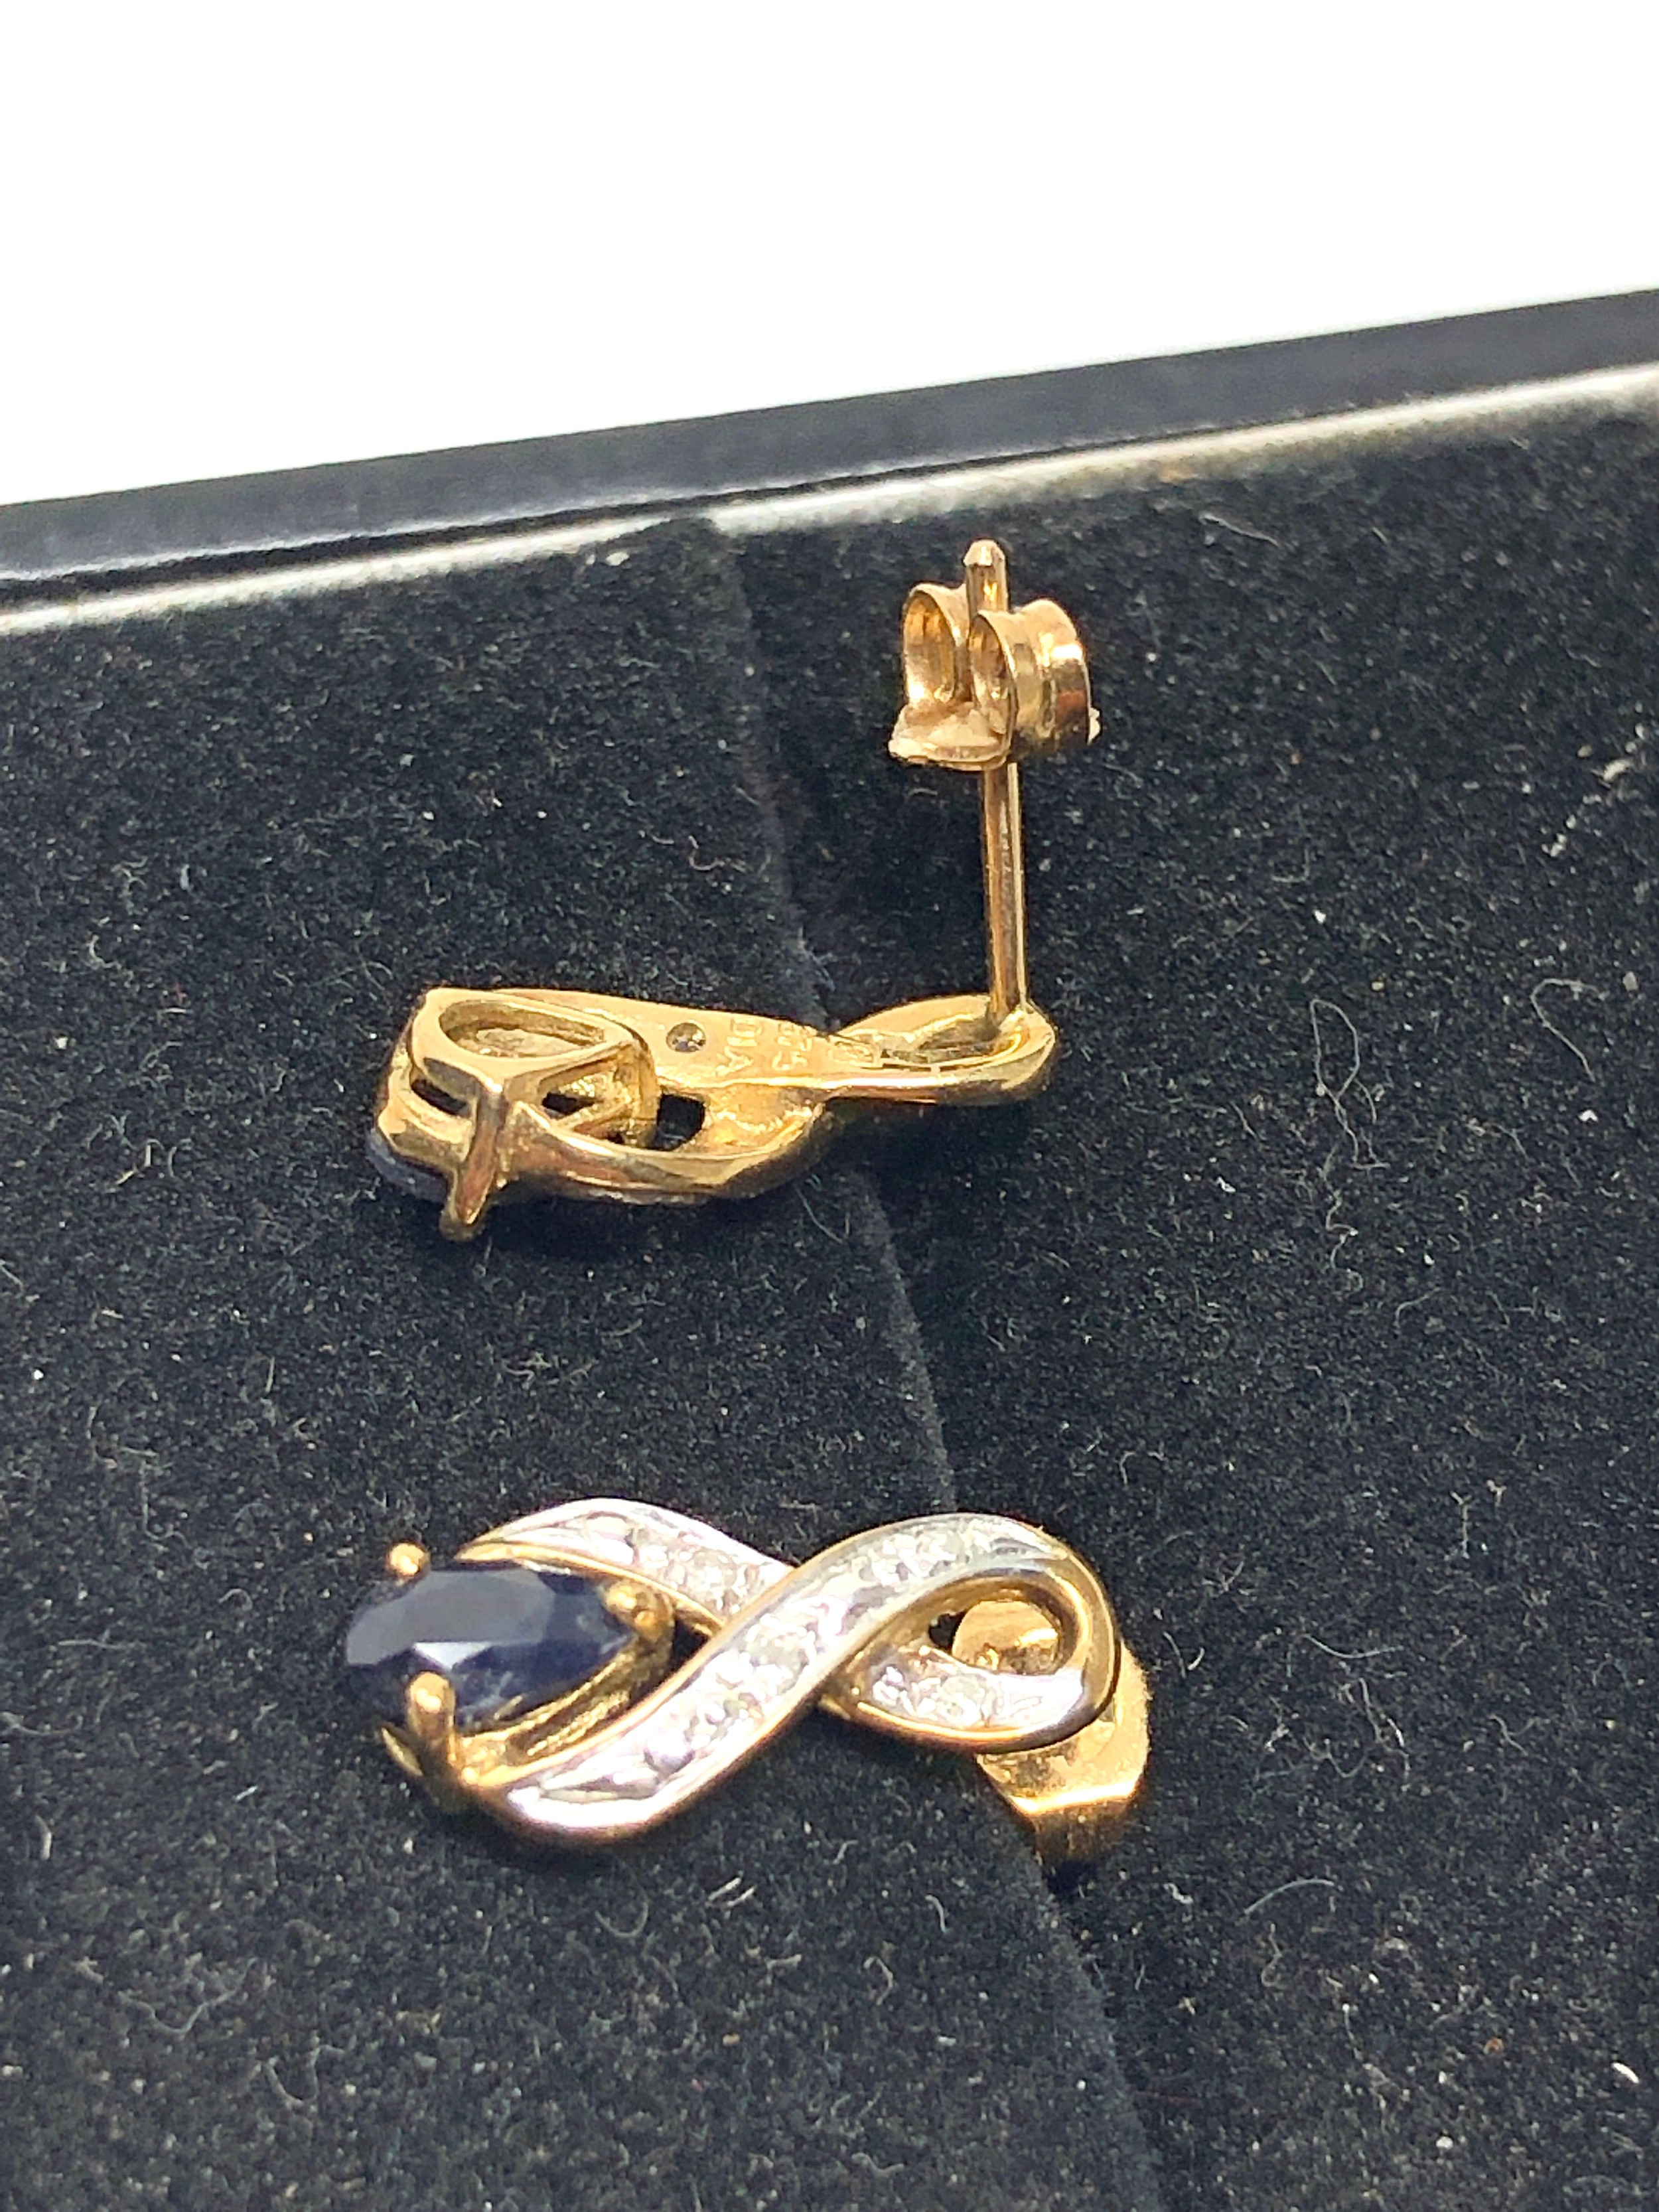 9ct gold diamond & sapphire earrings weight 1.5g - Bild 3 aus 3